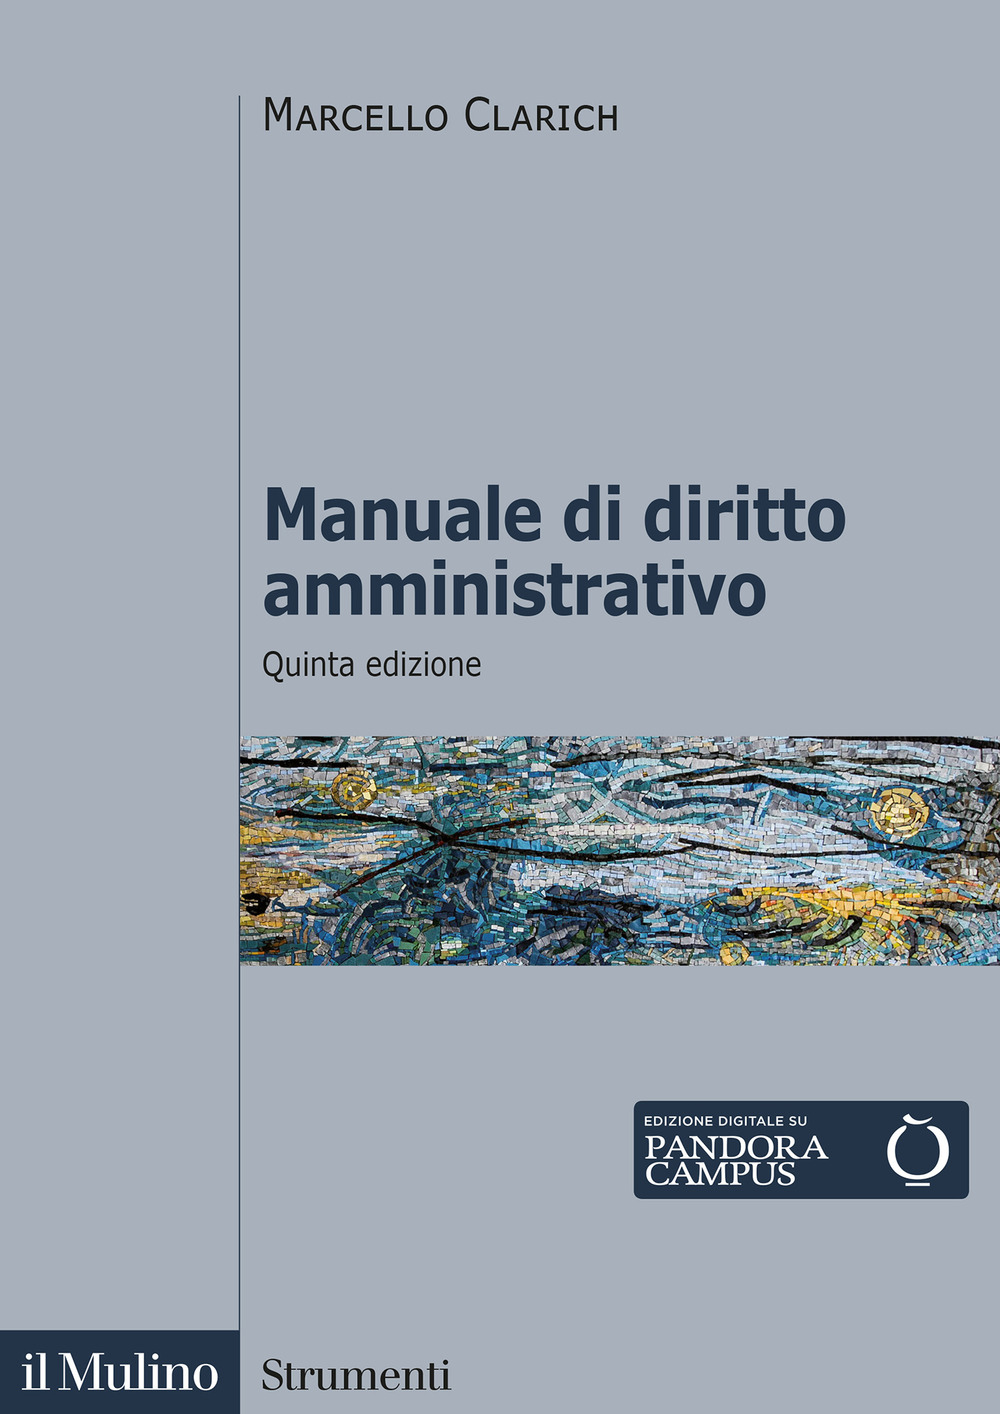 Libri Marcello Clarich - Manuale Di Diritto Amministrativo NUOVO SIGILLATO, EDIZIONE DEL 10/02/2022 SUBITO DISPONIBILE